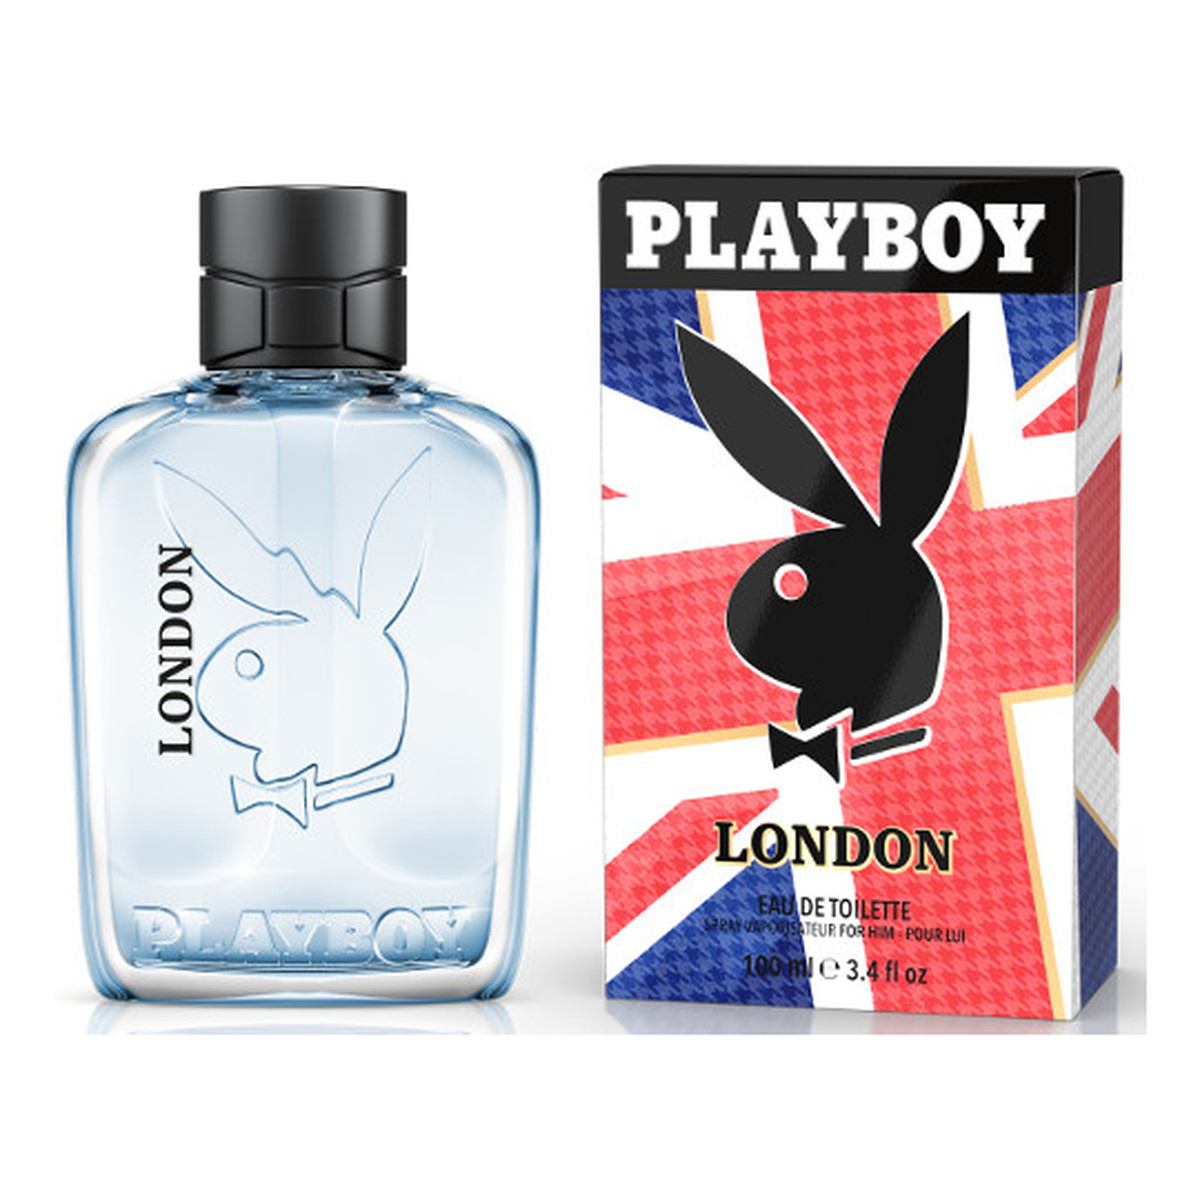 Playboy London Woda toaletowa dla mężczyzn 60ml